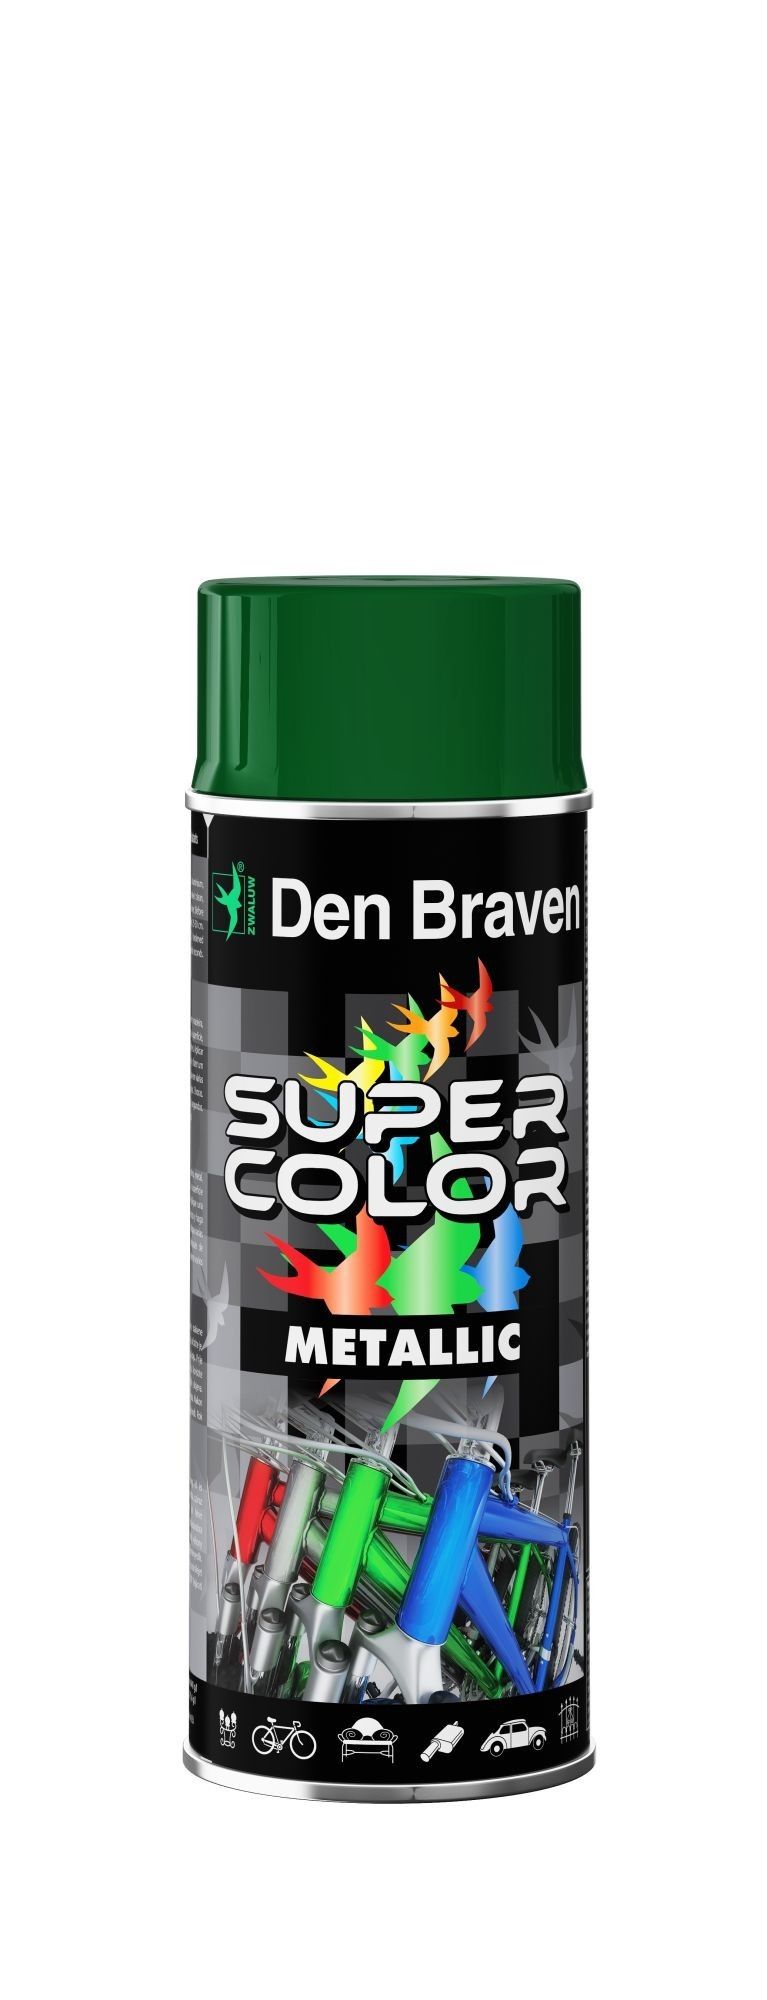 Błyskawiczne porządki w ogrodzie z farbami w spray’u Super Color firmy Den Braven